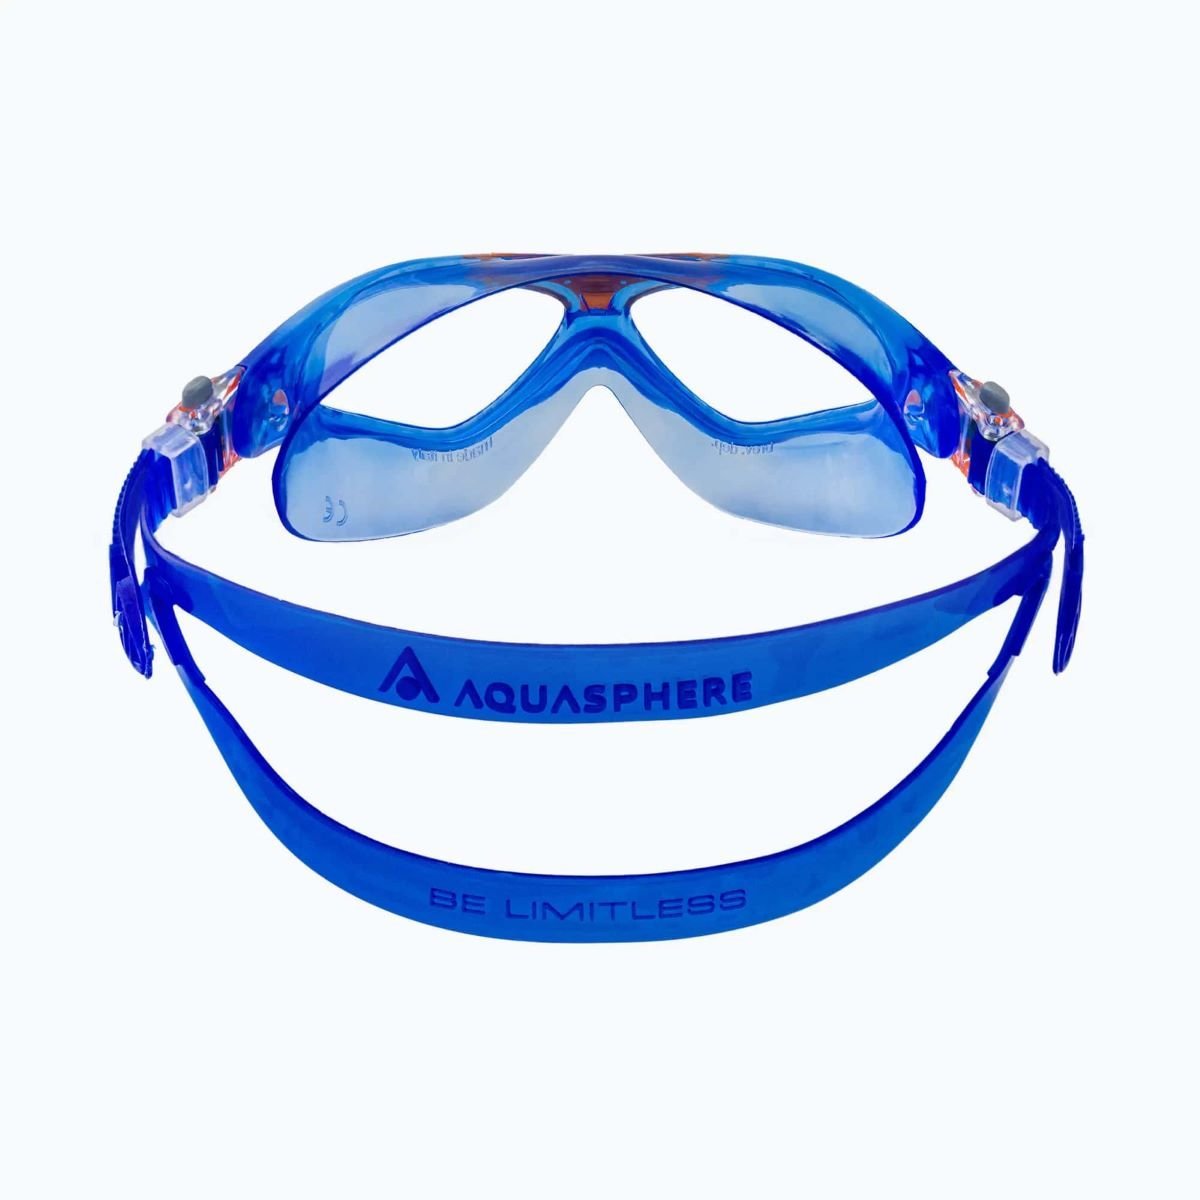 Okuliare AquaLung Vista J - modrá